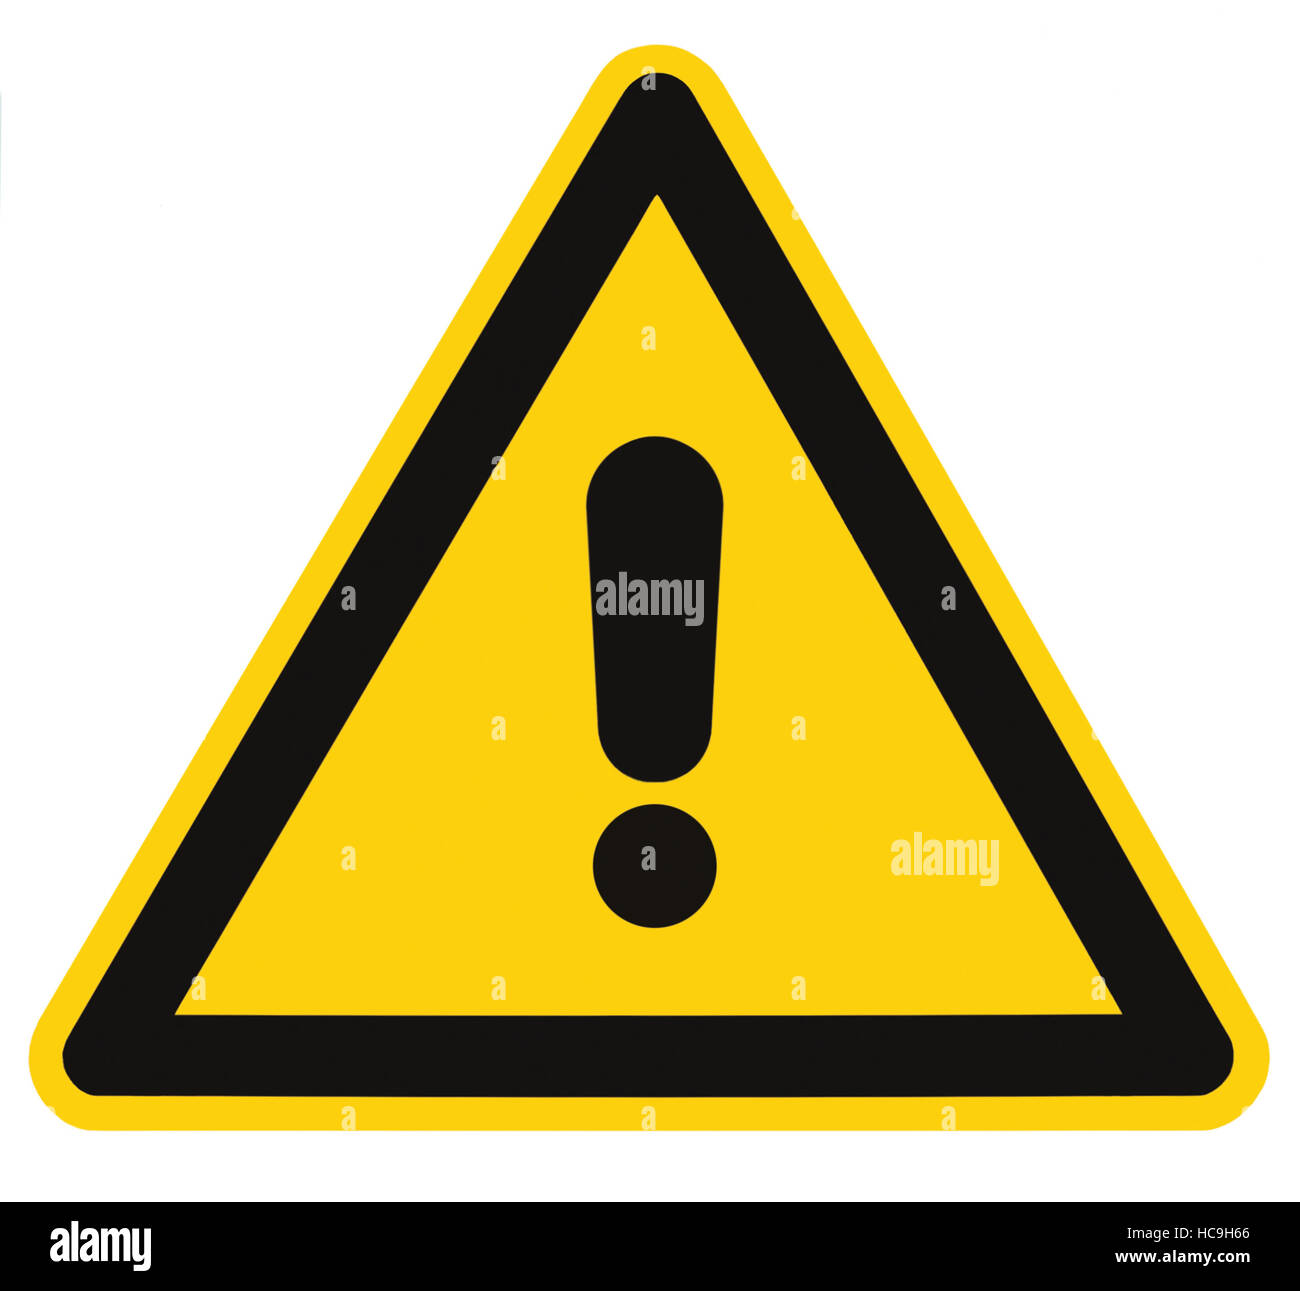 Blank altro pericolo e segno di pericolo etichetta, isolato, nero generale triangolo di avvertimento su giallo, grandi macro Foto Stock